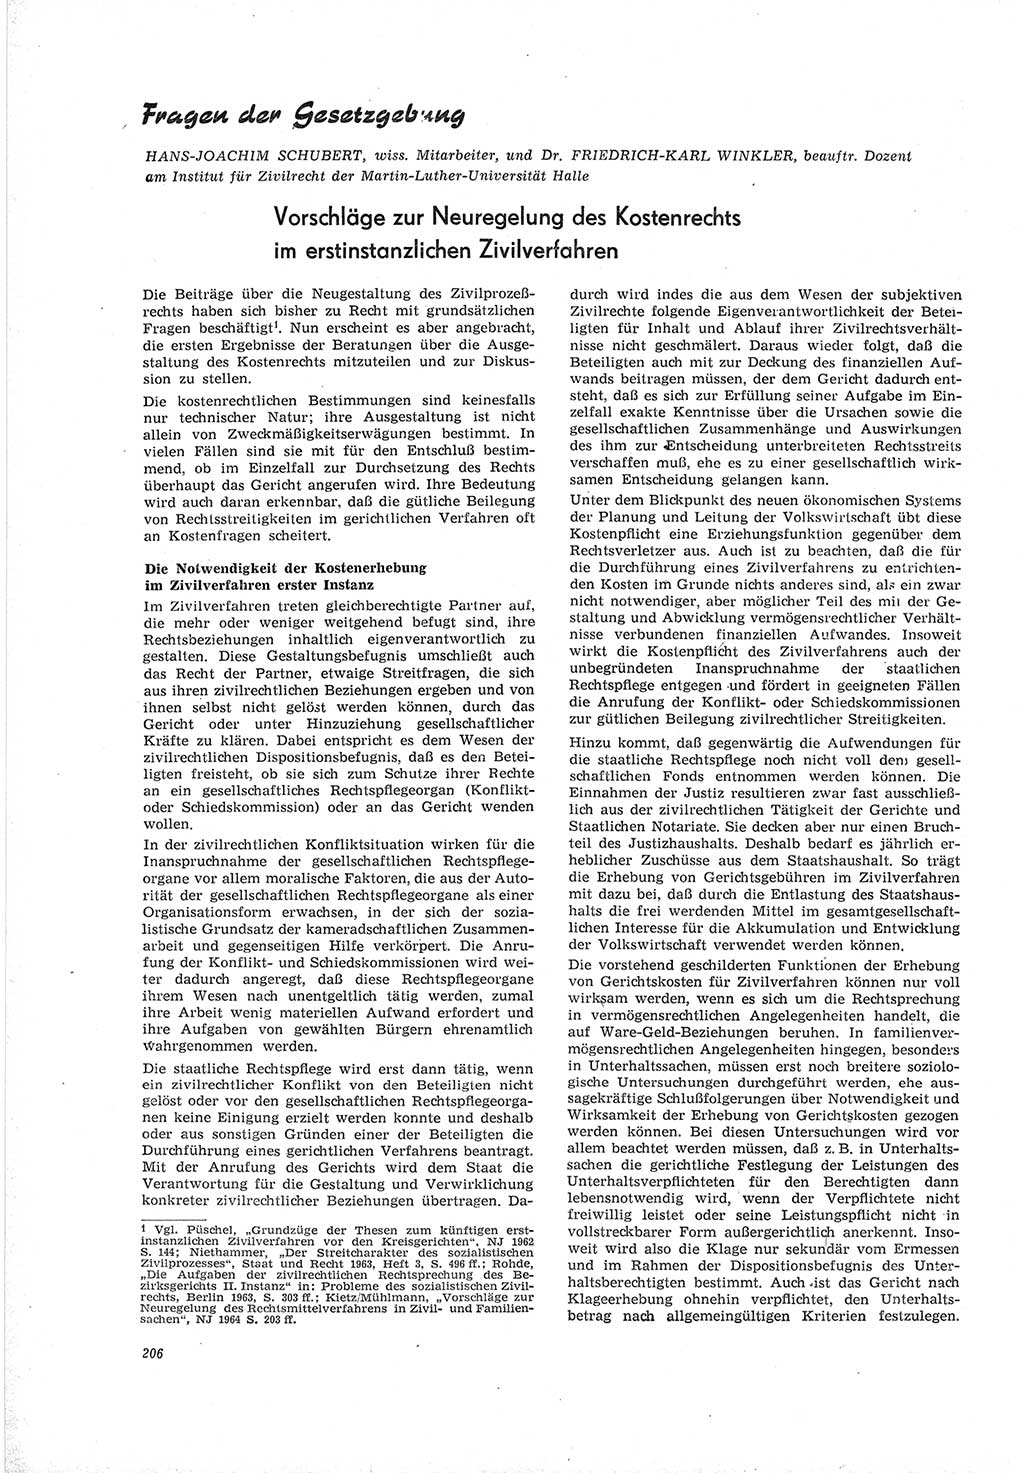 Neue Justiz (NJ), Zeitschrift für Recht und Rechtswissenschaft [Deutsche Demokratische Republik (DDR)], 19. Jahrgang 1965, Seite 206 (NJ DDR 1965, S. 206)